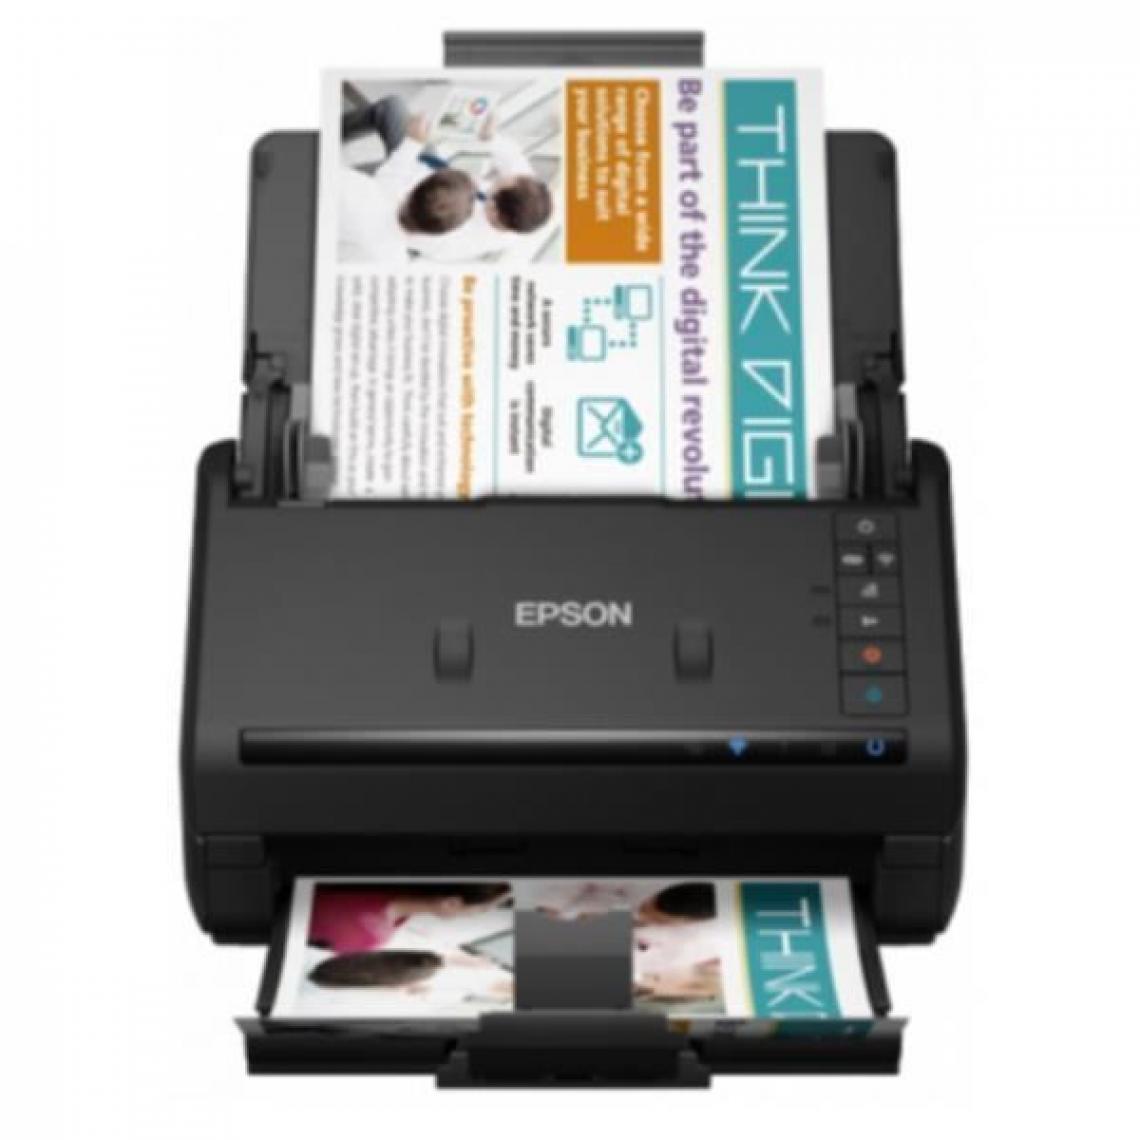 Epson - EPSON - Scanner ES-580W - Scanner